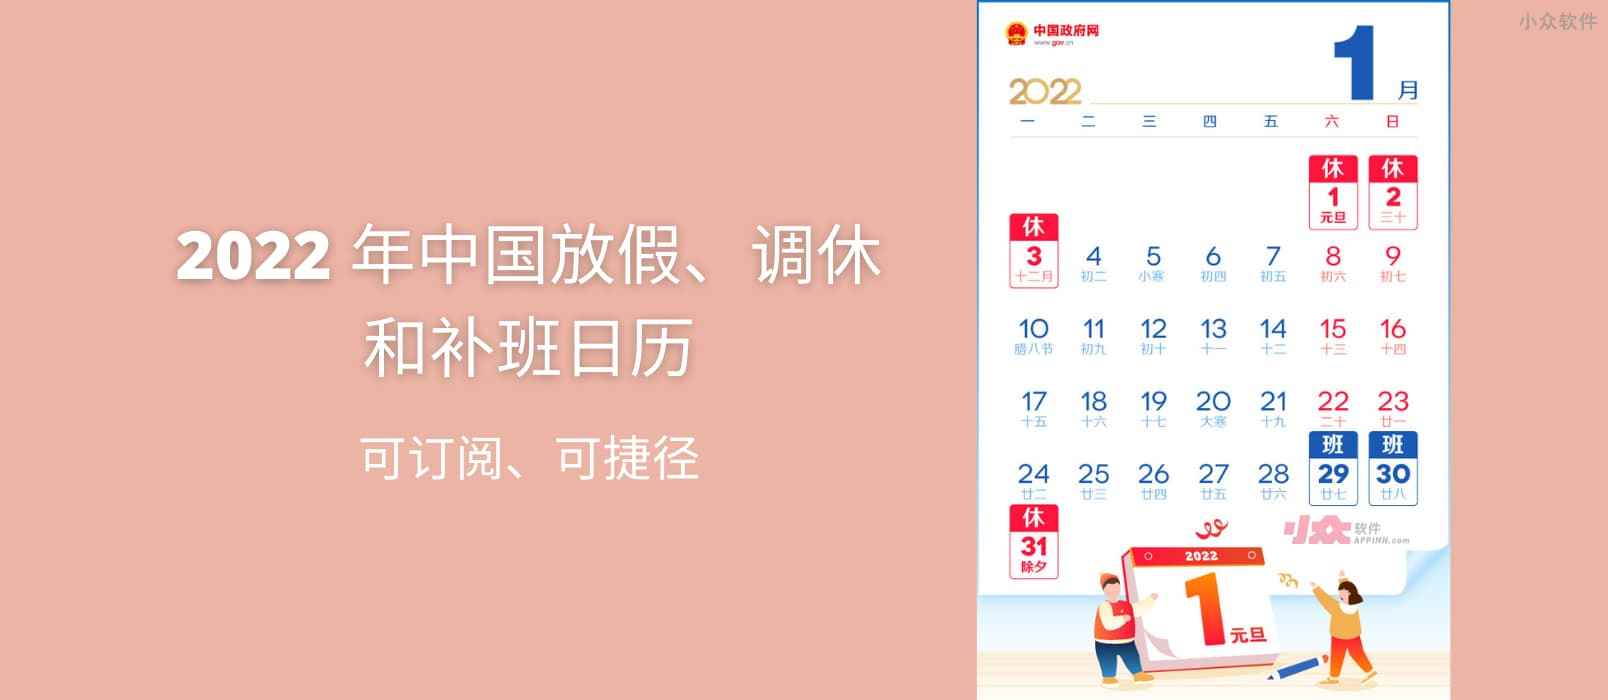 2022 年中国放假、调休和补班日历，可订阅、可捷径